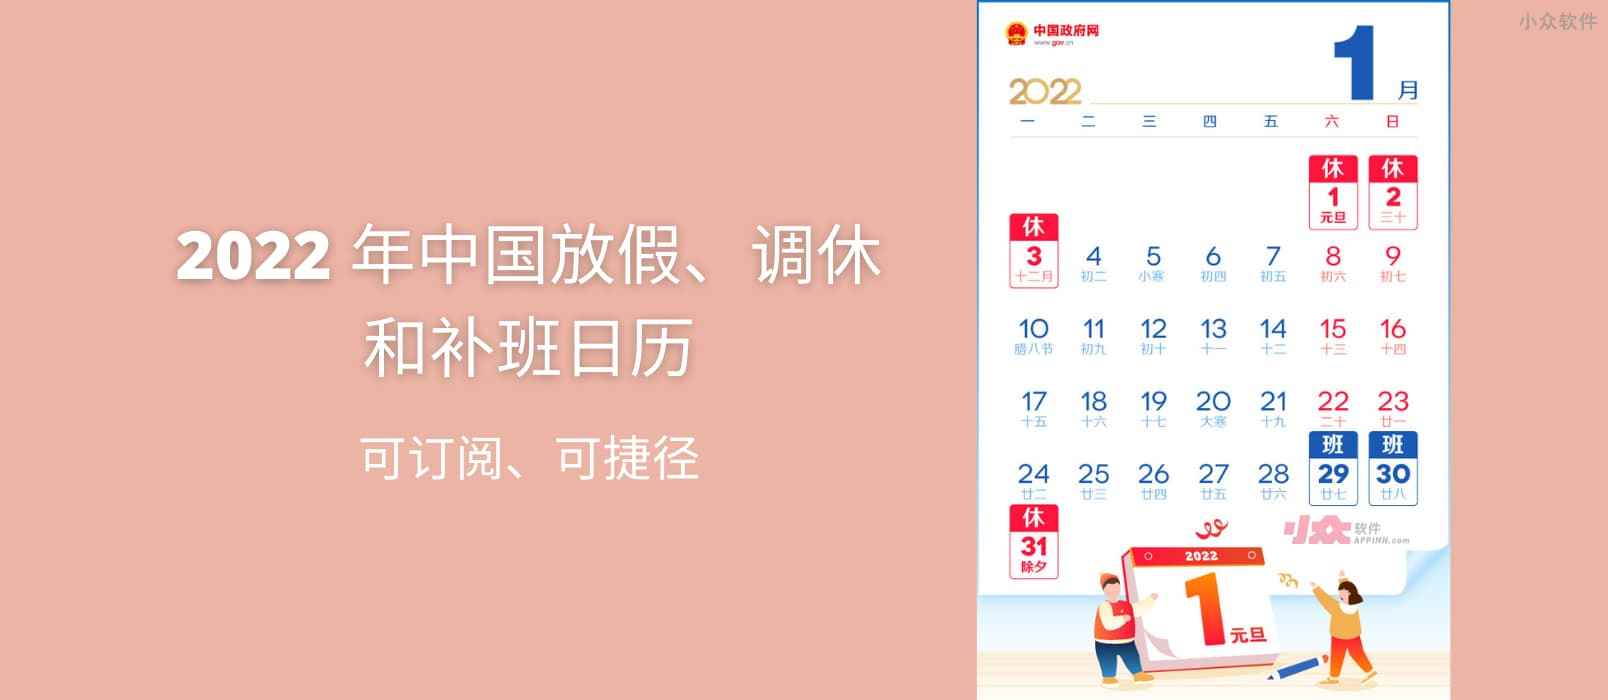 2022 年中国放假、调休和补班日历，可订阅、可捷径